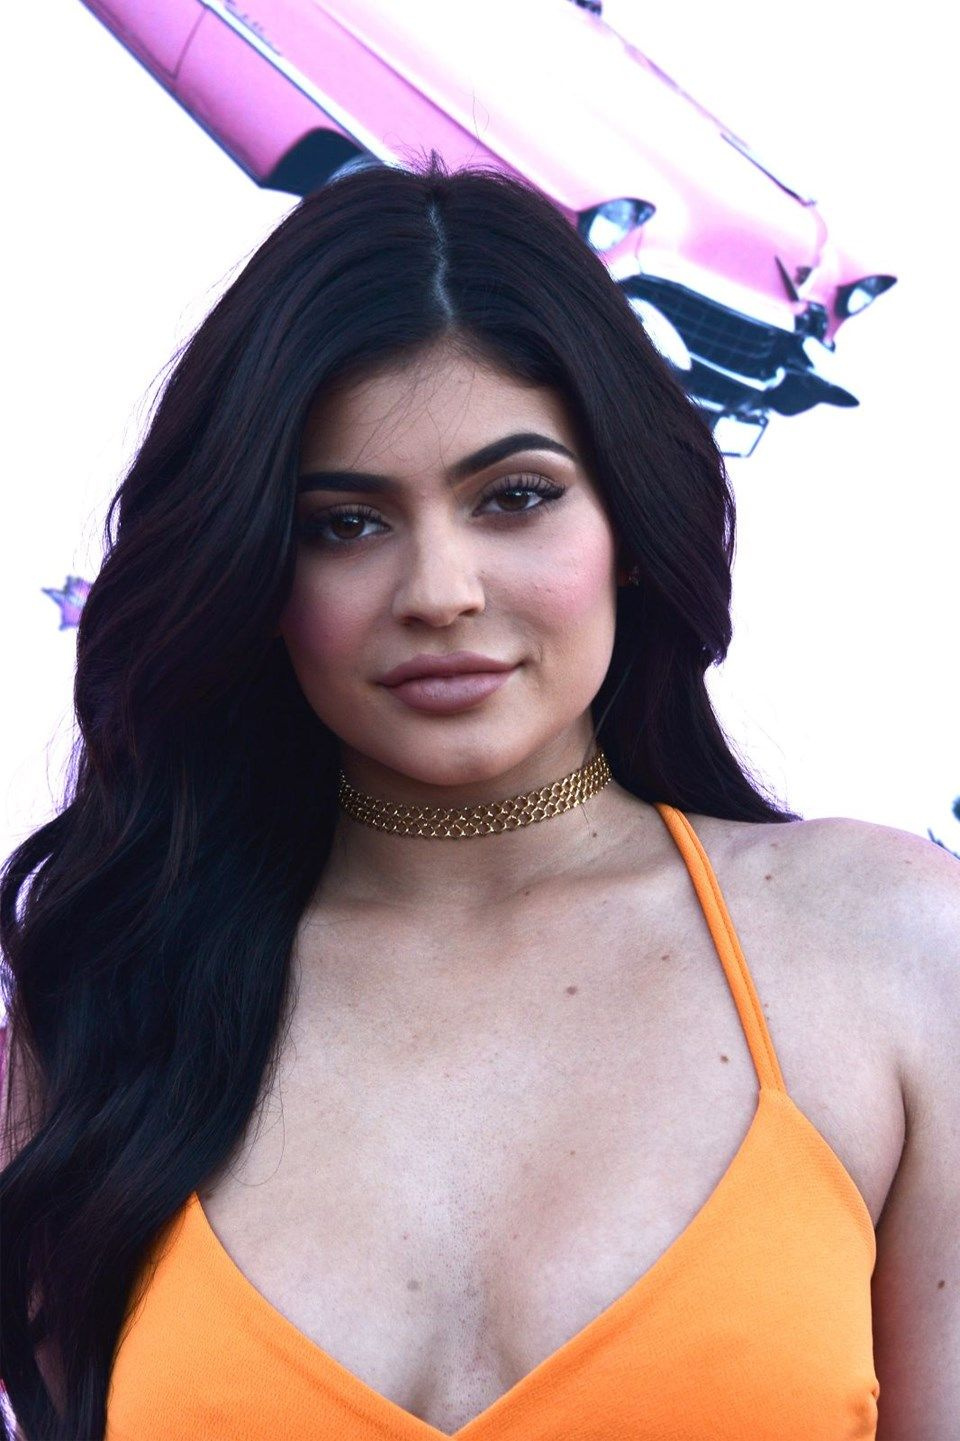 Dünyanın en genç milyarderi olan Kylie Jenner hastalıkla mücadelesinden bahsetti